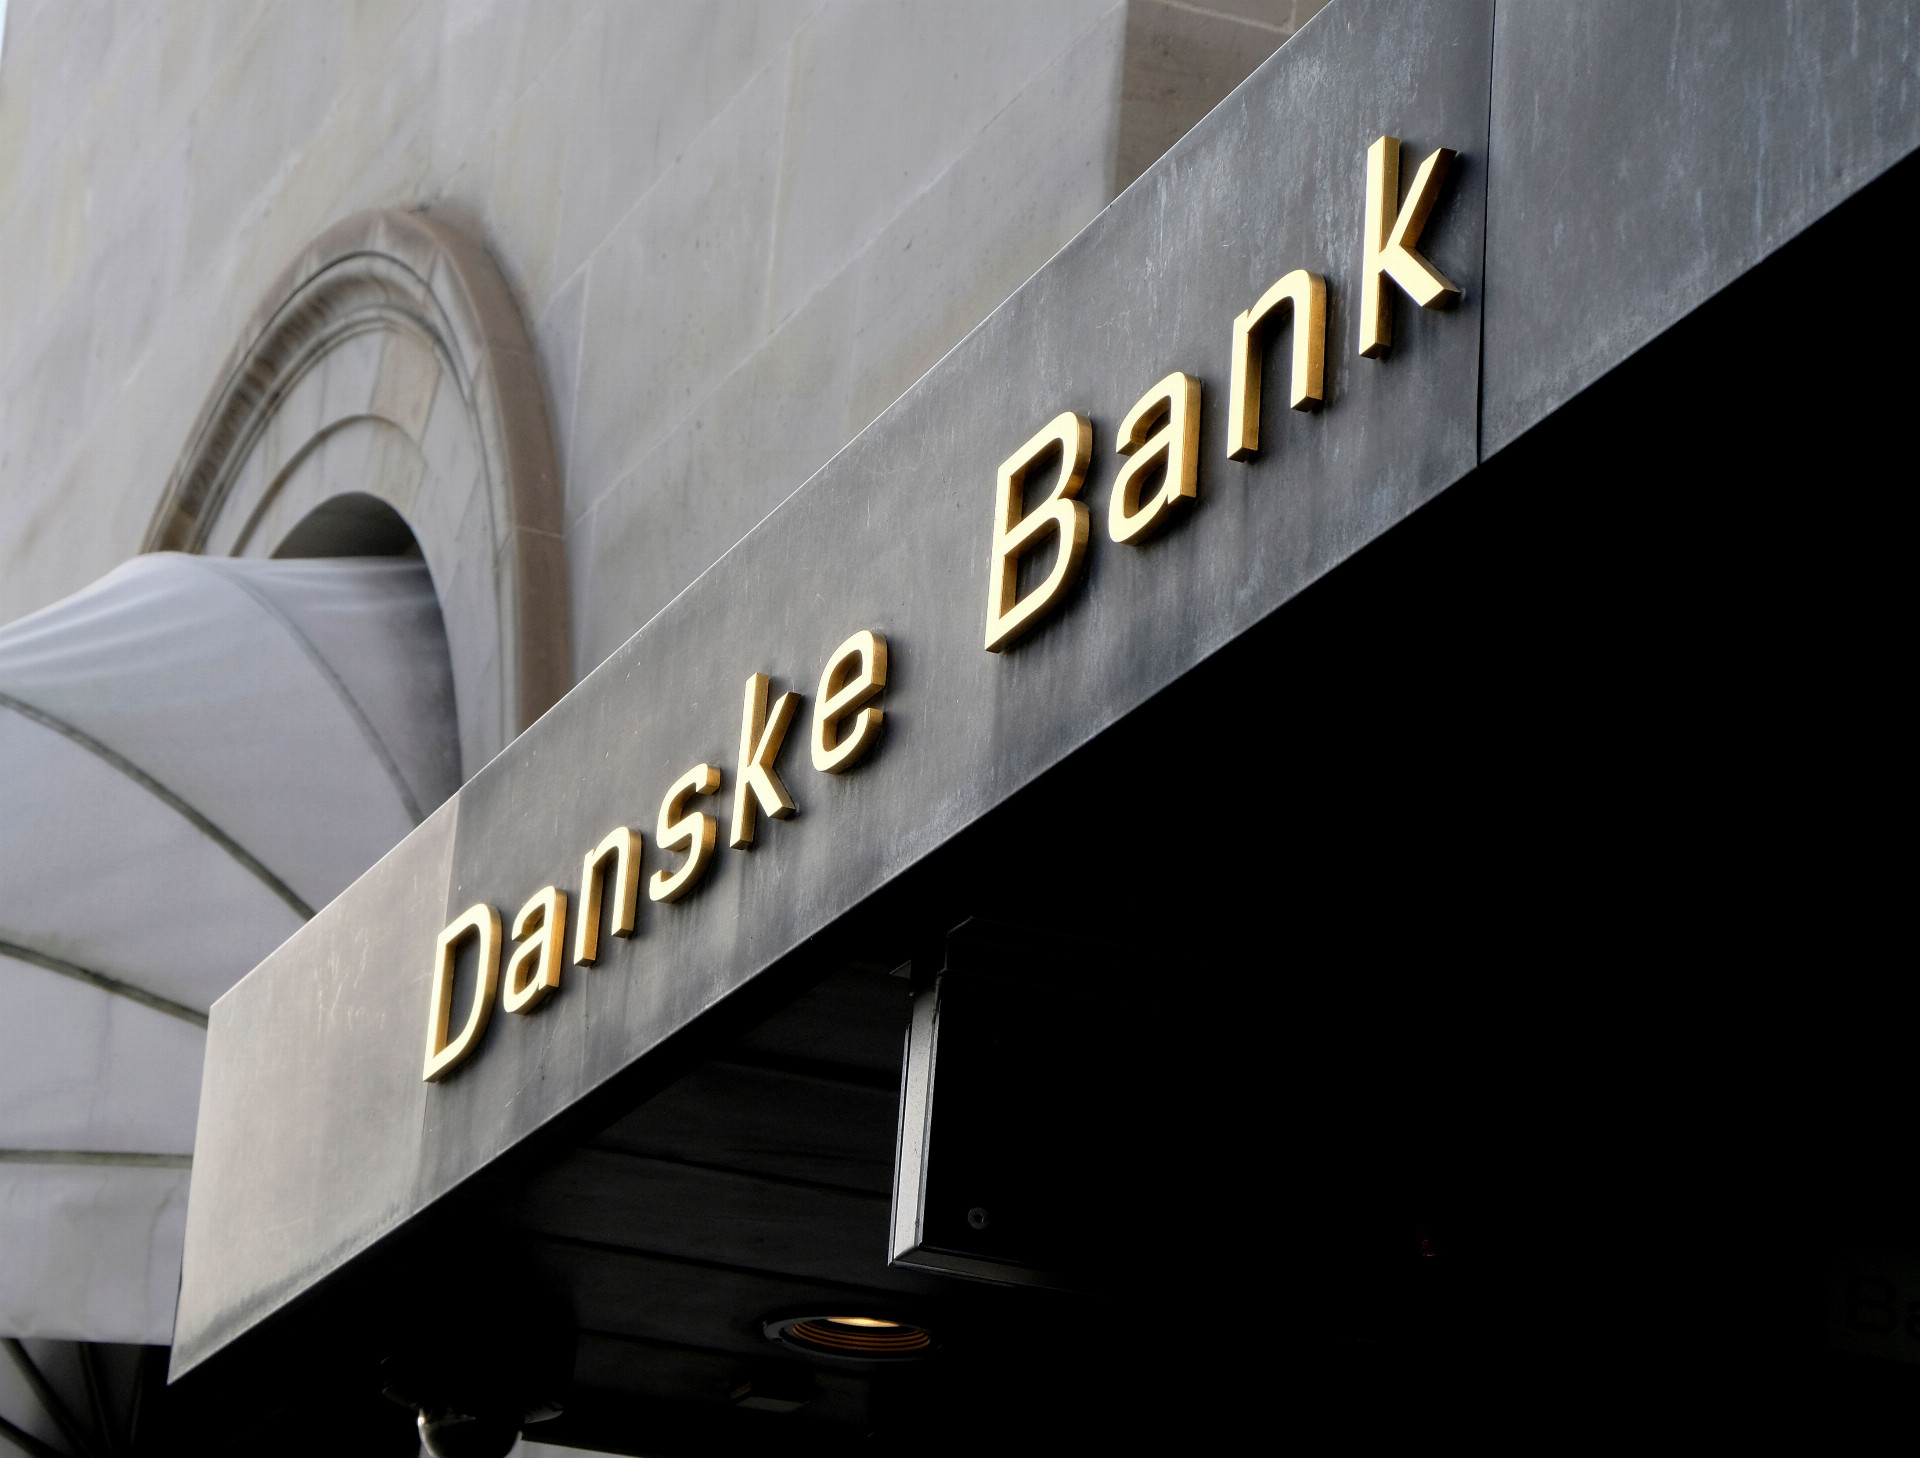  Danske Bank